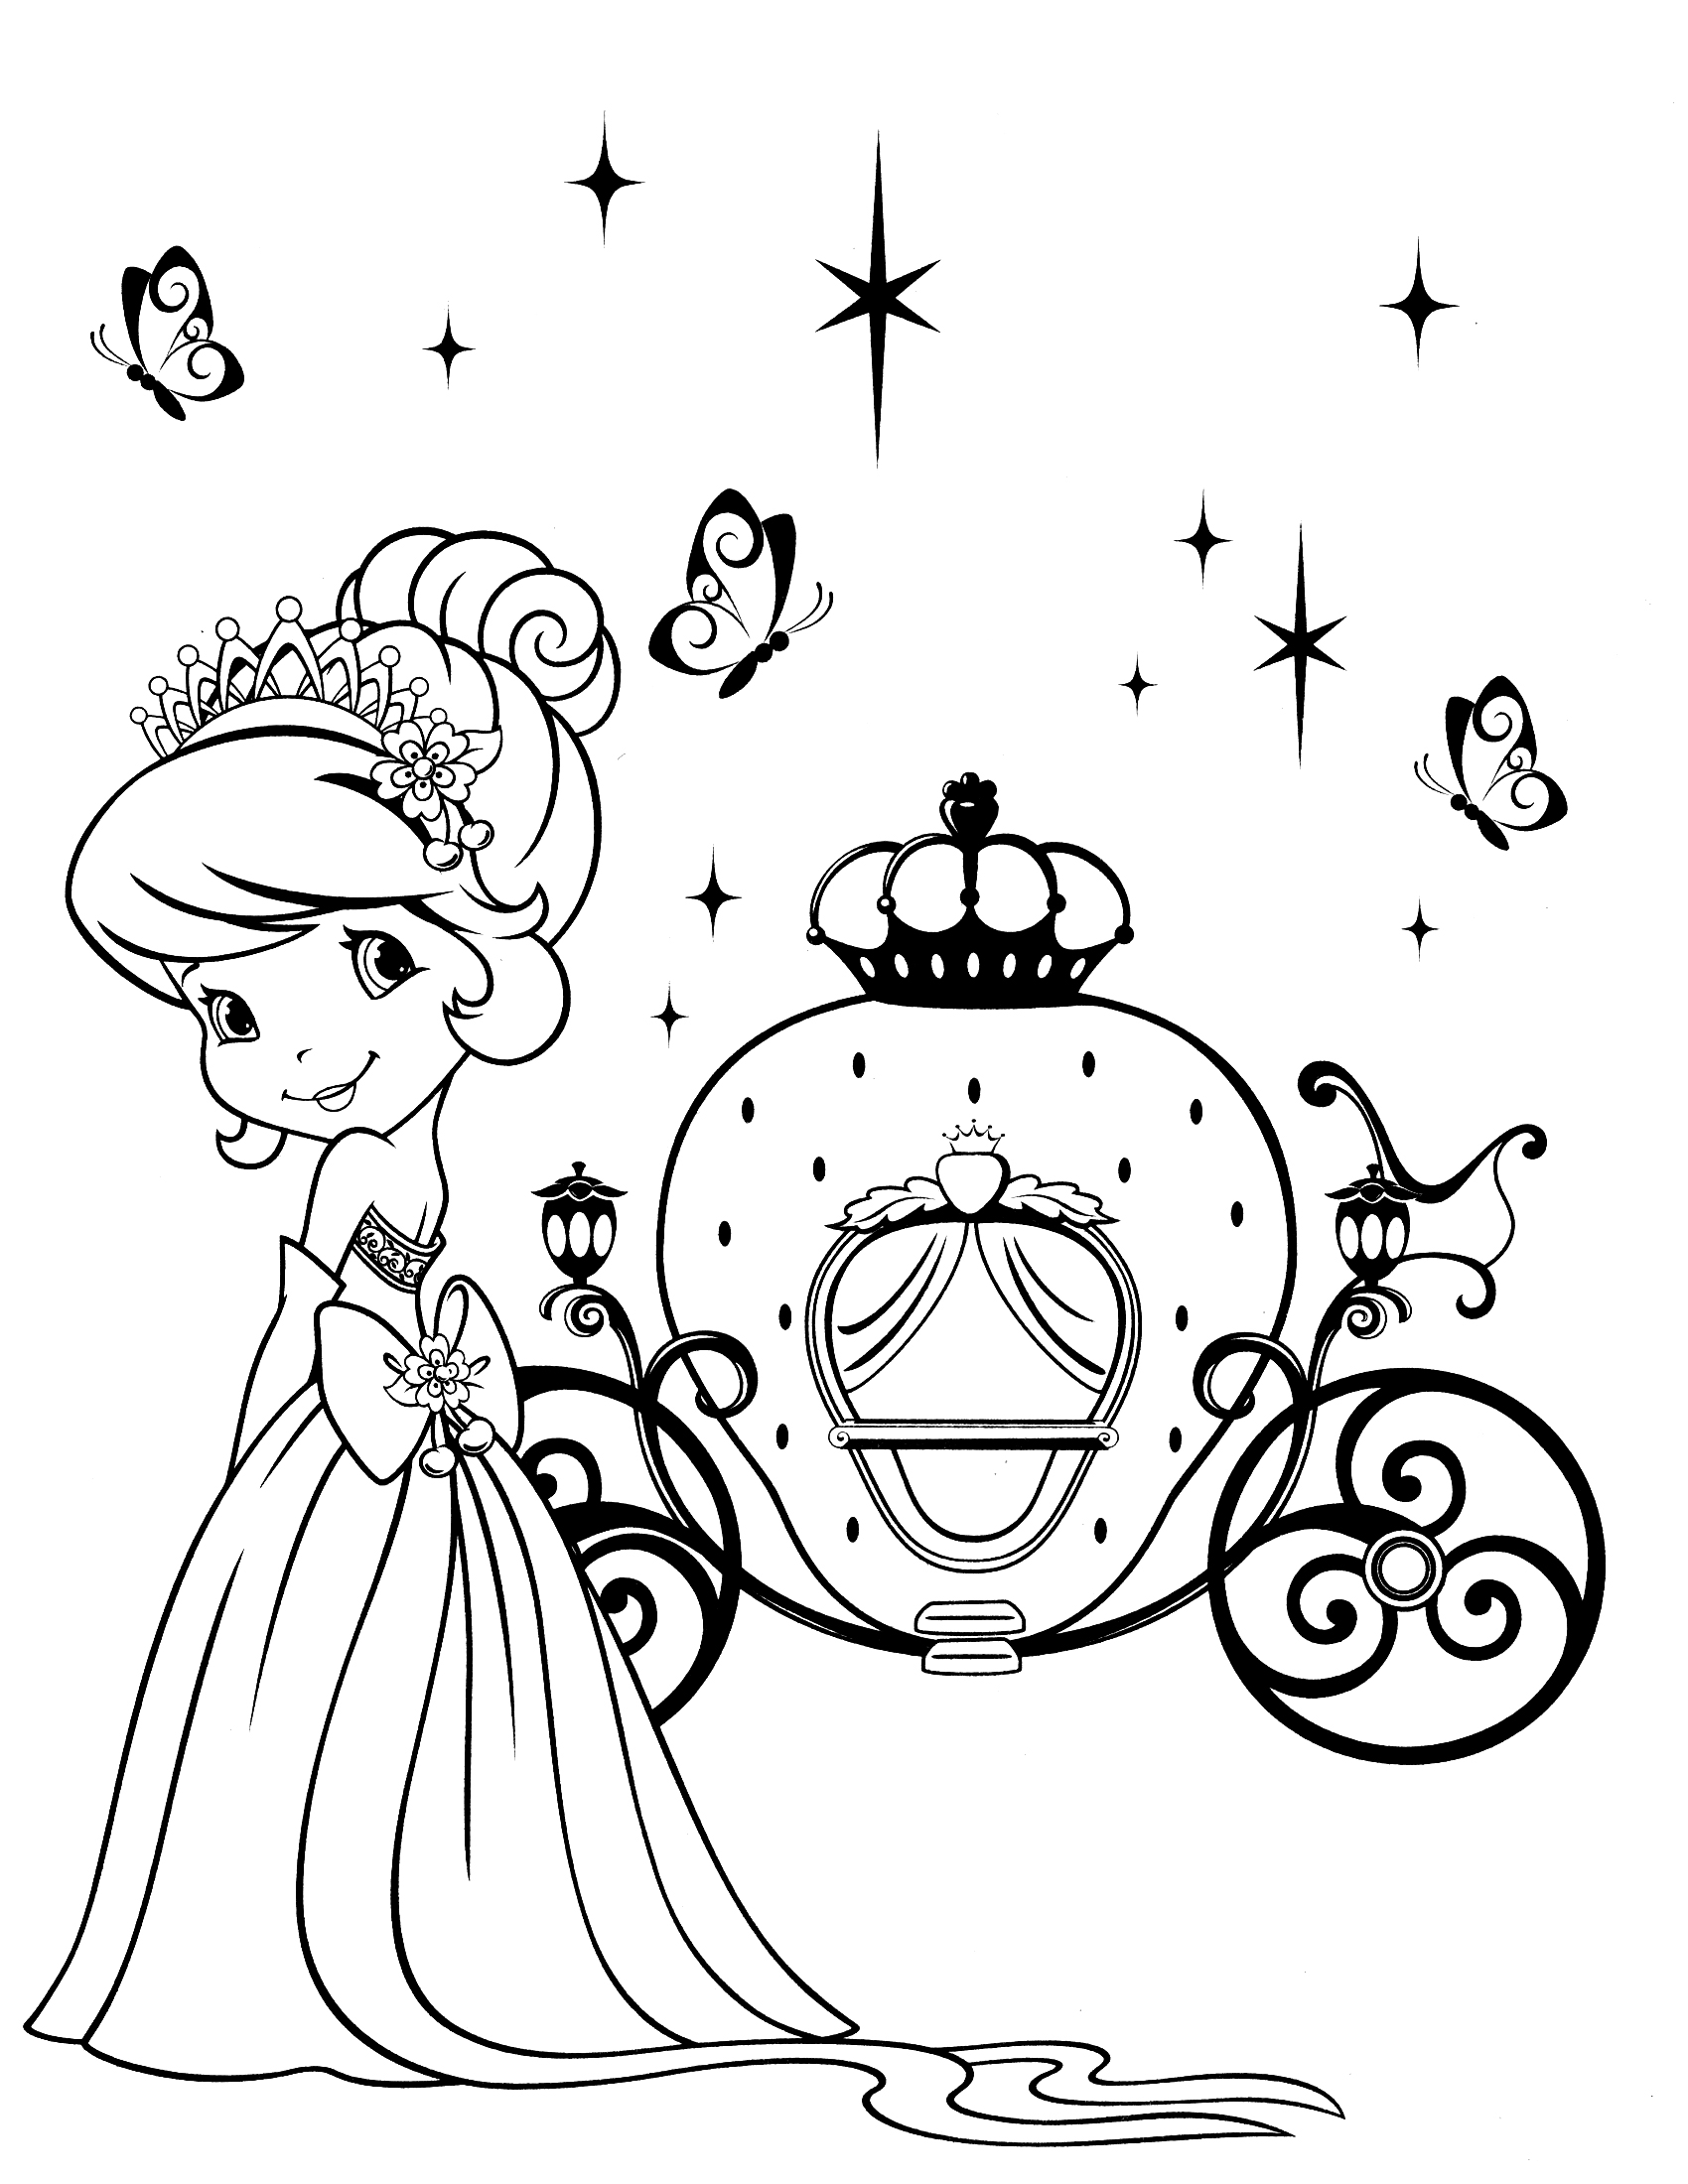 disegni da colorare gratis fragolina dolcecuore principessa con la carrozza